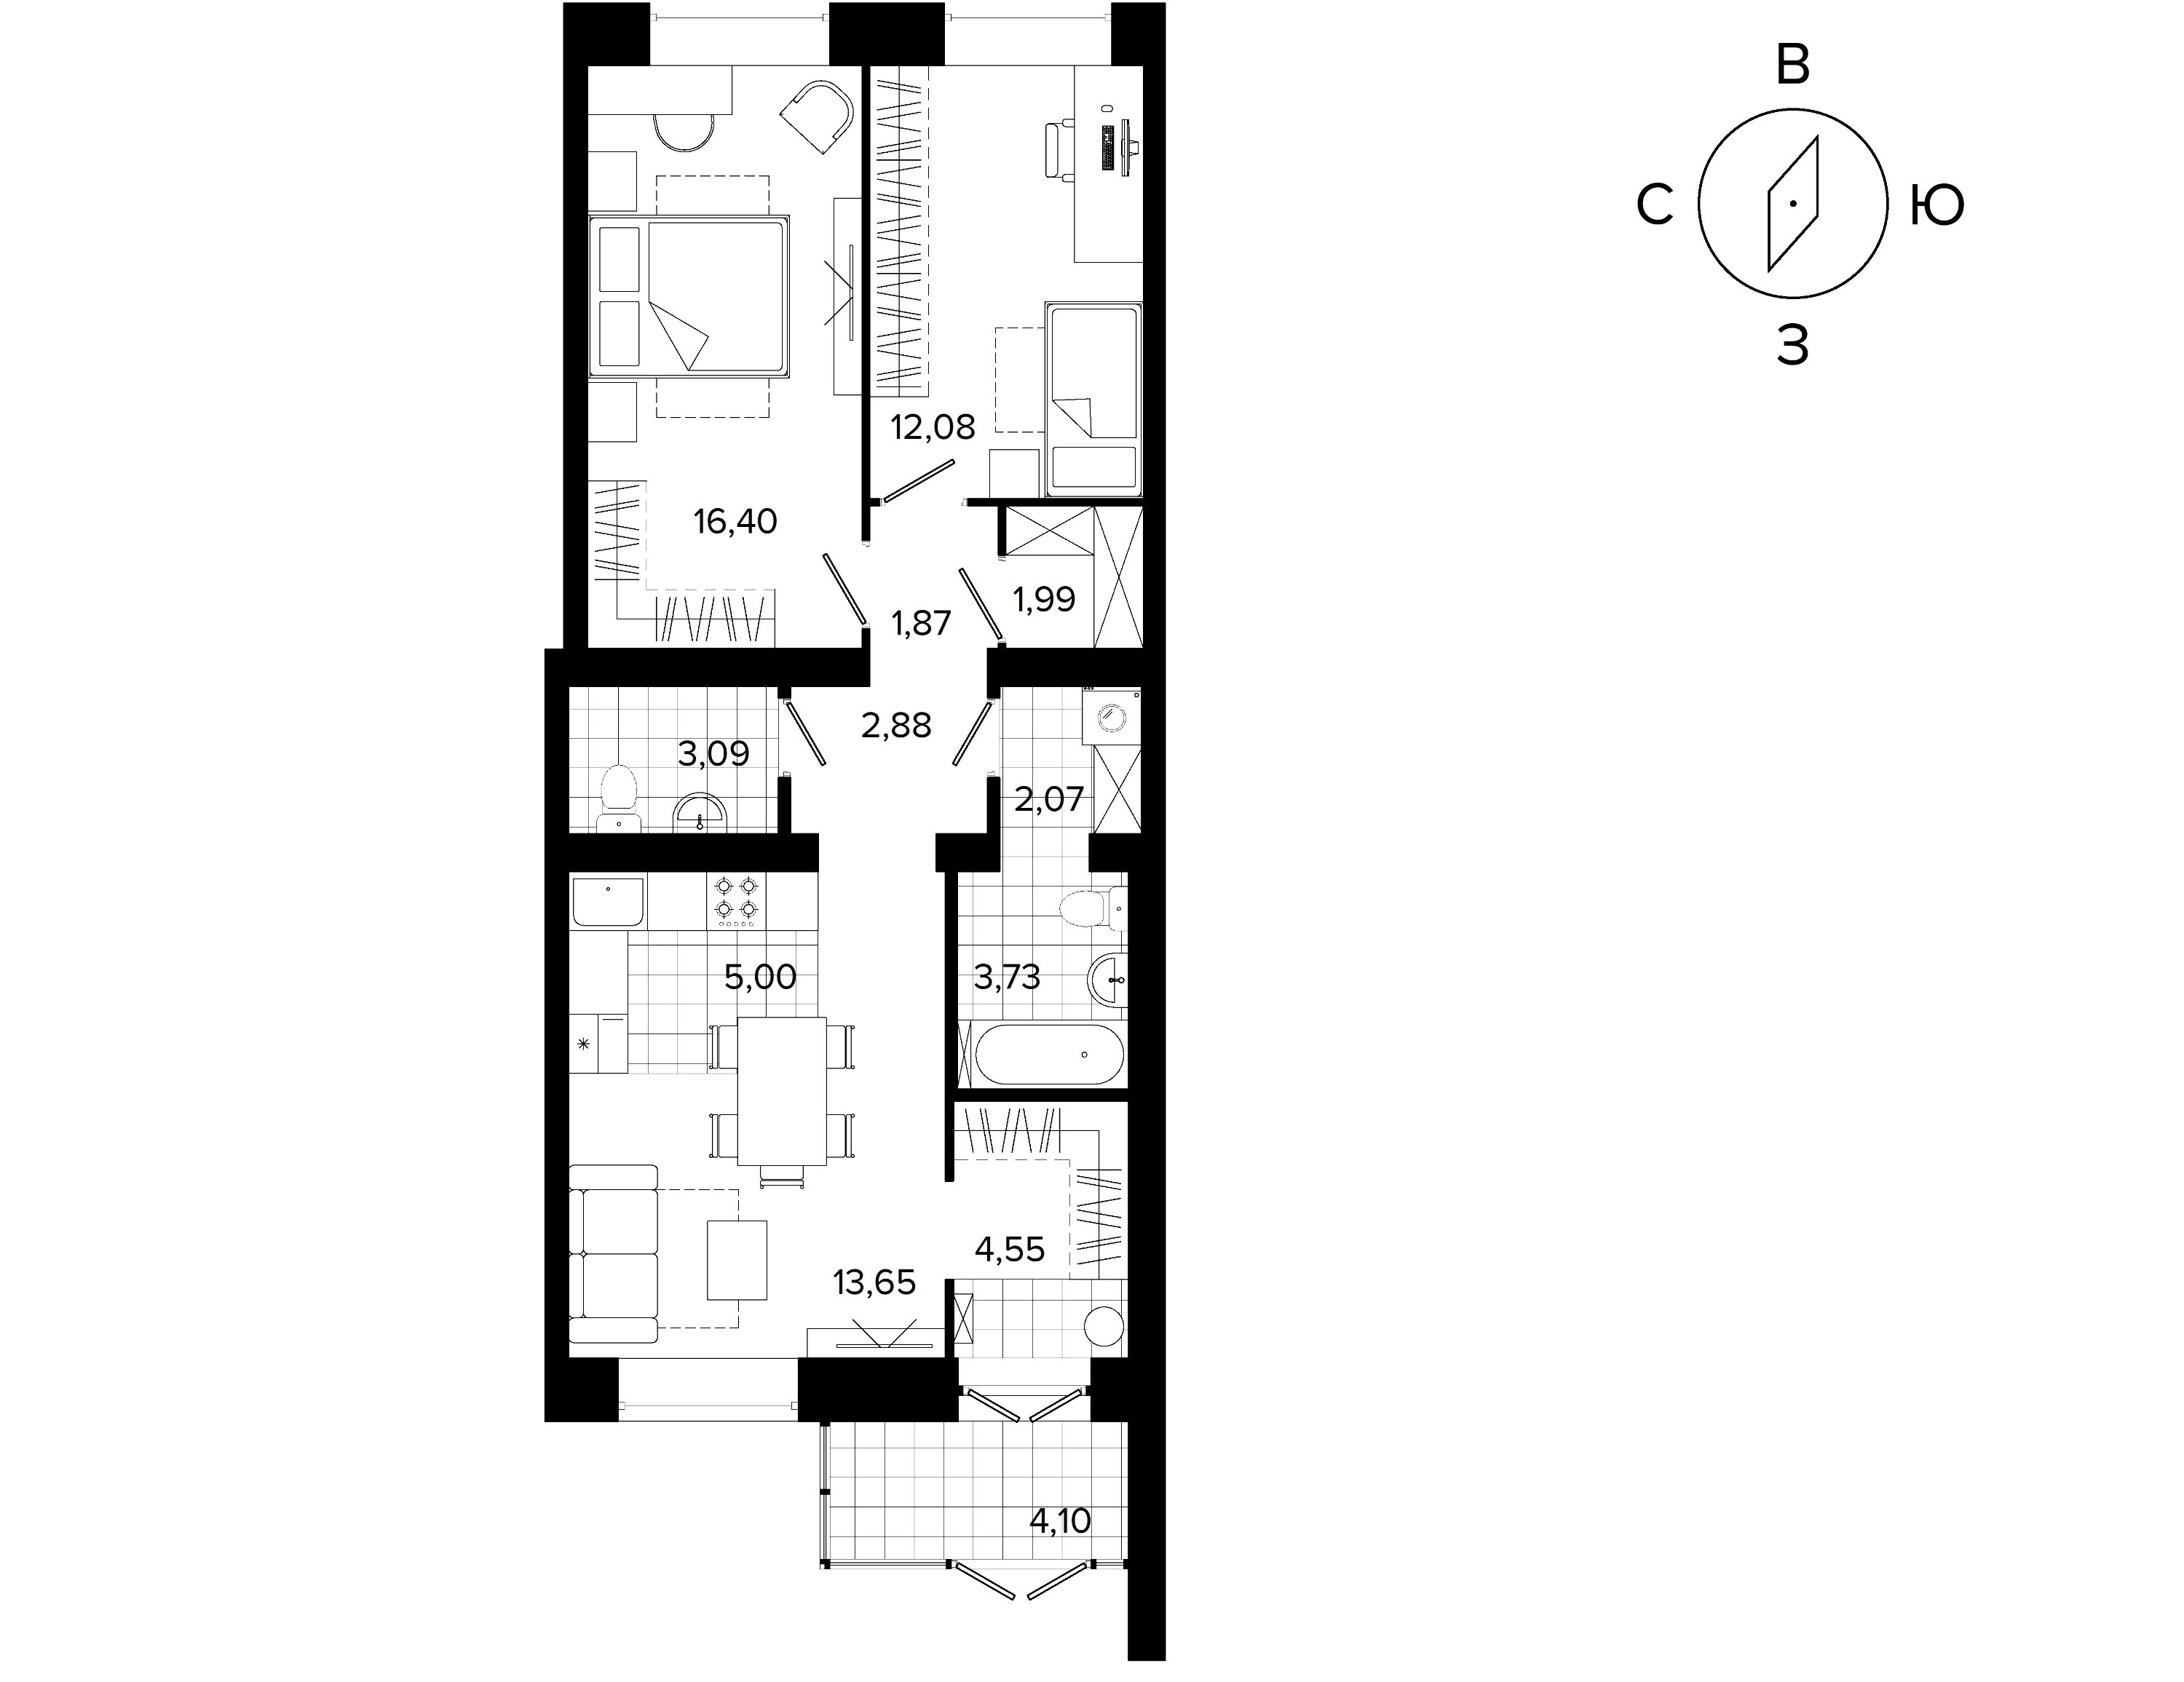 Чтобы чувствовать себя жителем таунхауса или коттеджа, можно приобрести квартиру площадью 72 кв. м с отдельным входом. Такая двухкомнатная с отдельным входом стоит от 6,3 млн рублей